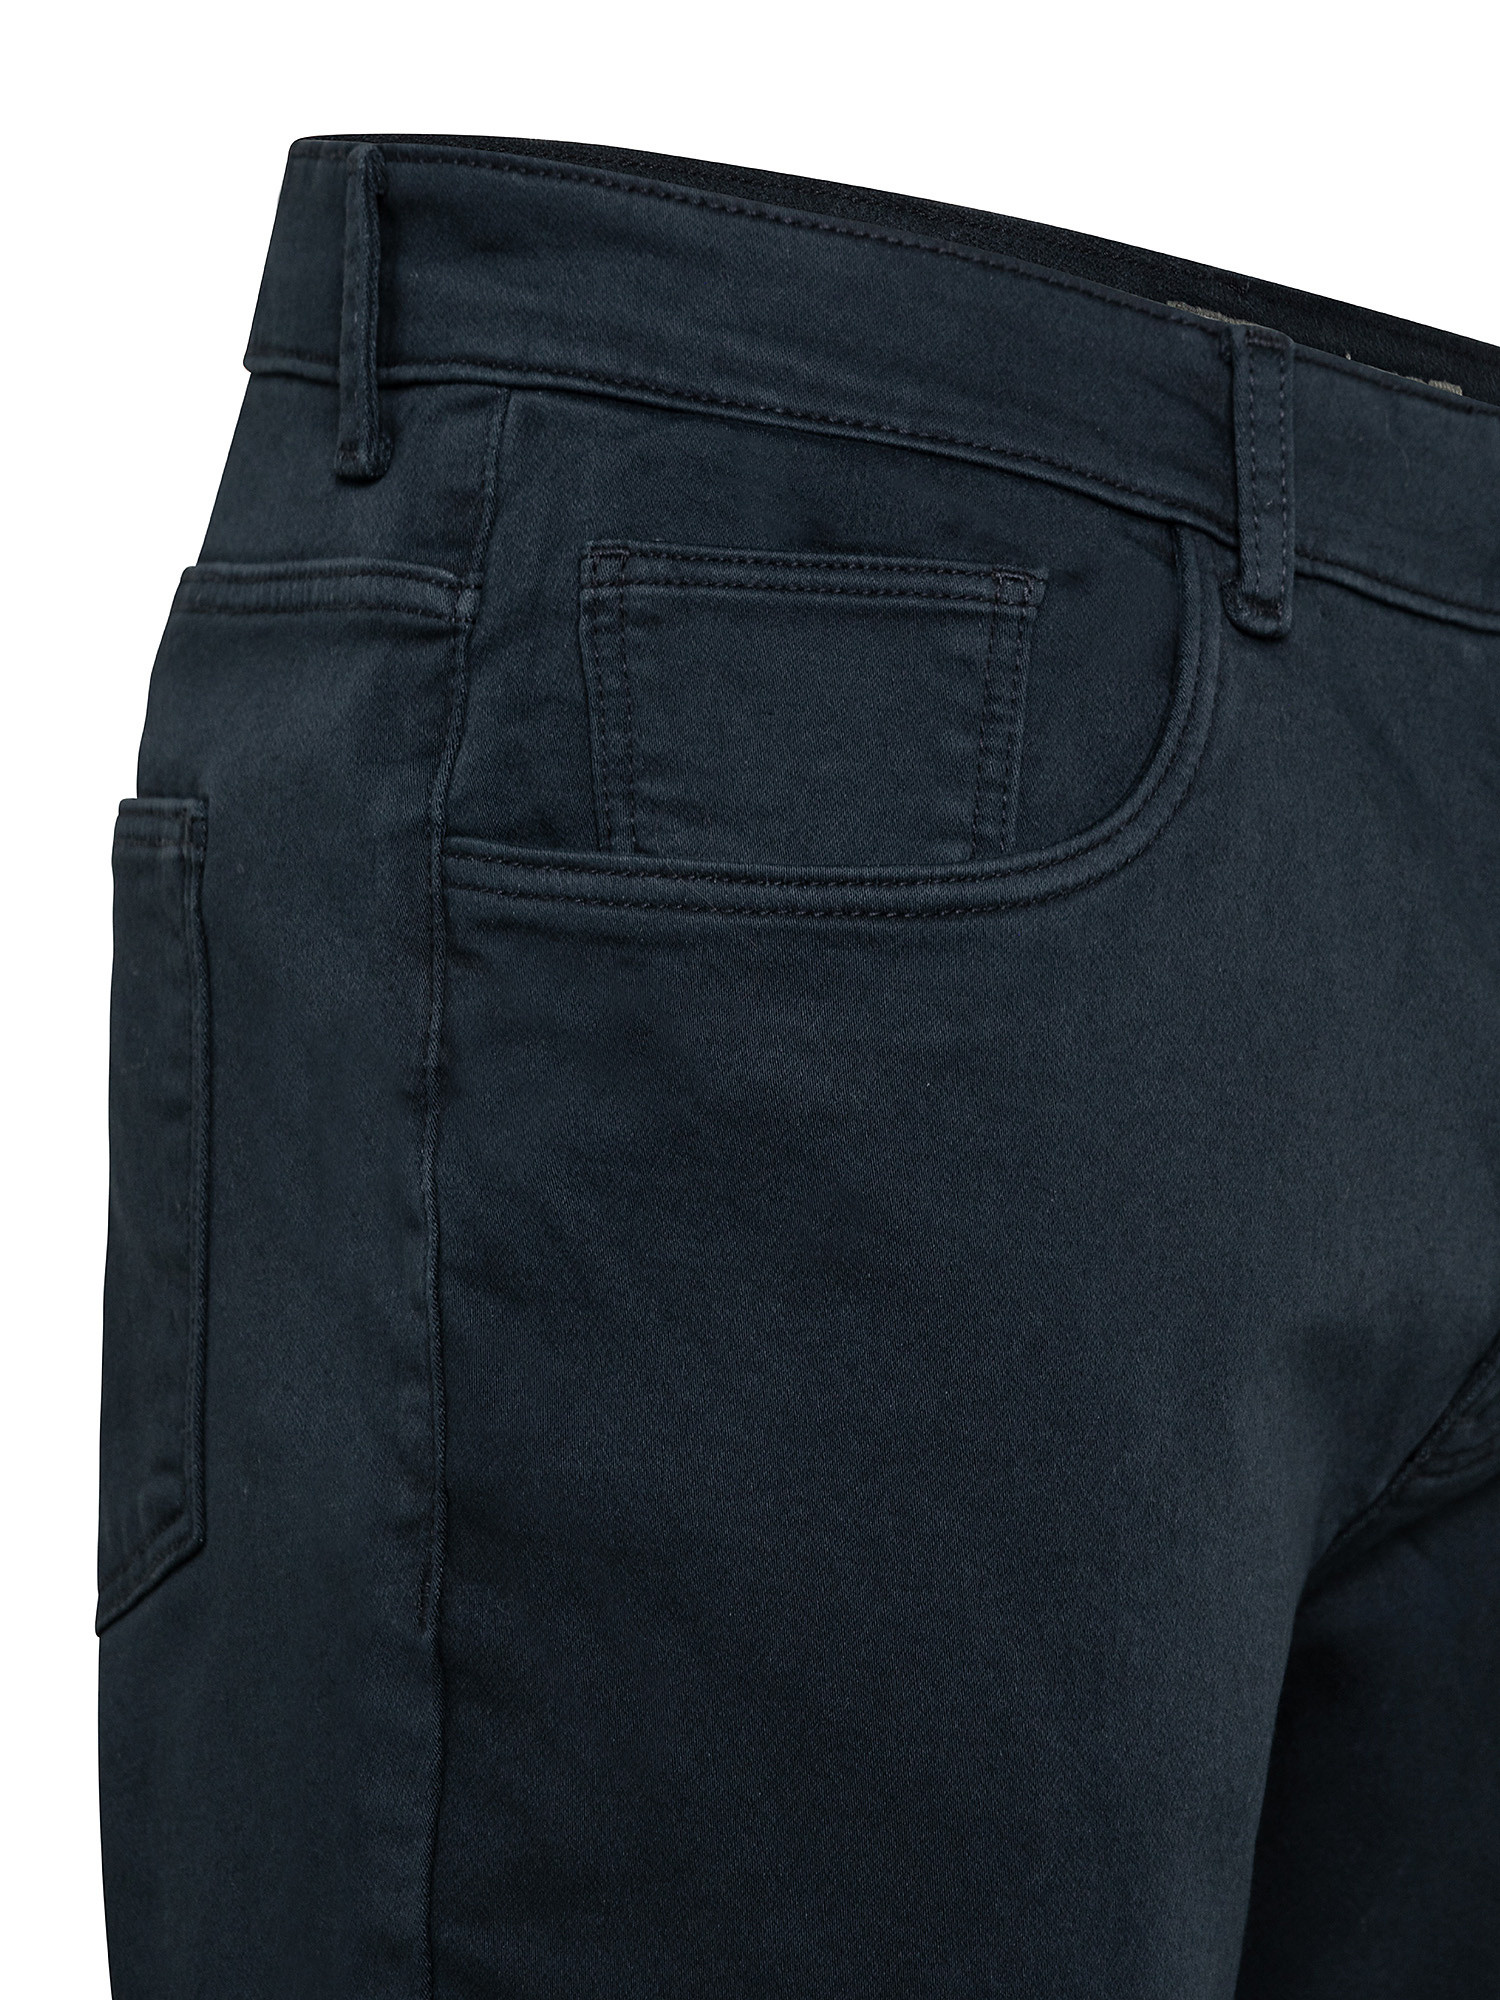 Pantalone 5 tasche slim in felpa, Blu, large image number 2